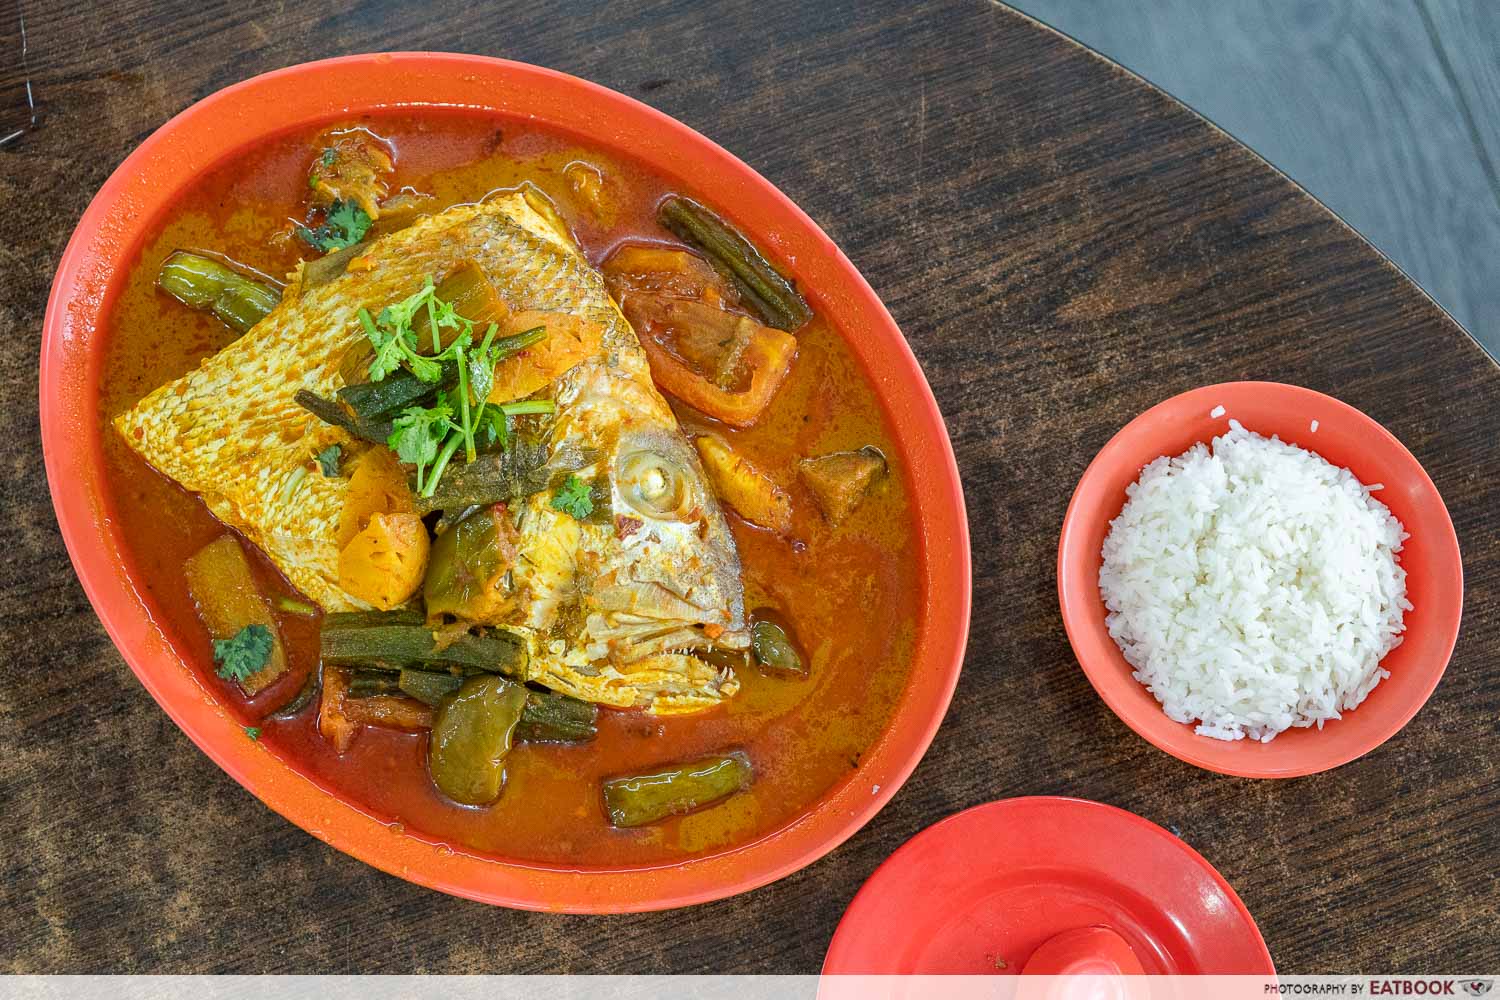 zai shun curry fish head intro shot